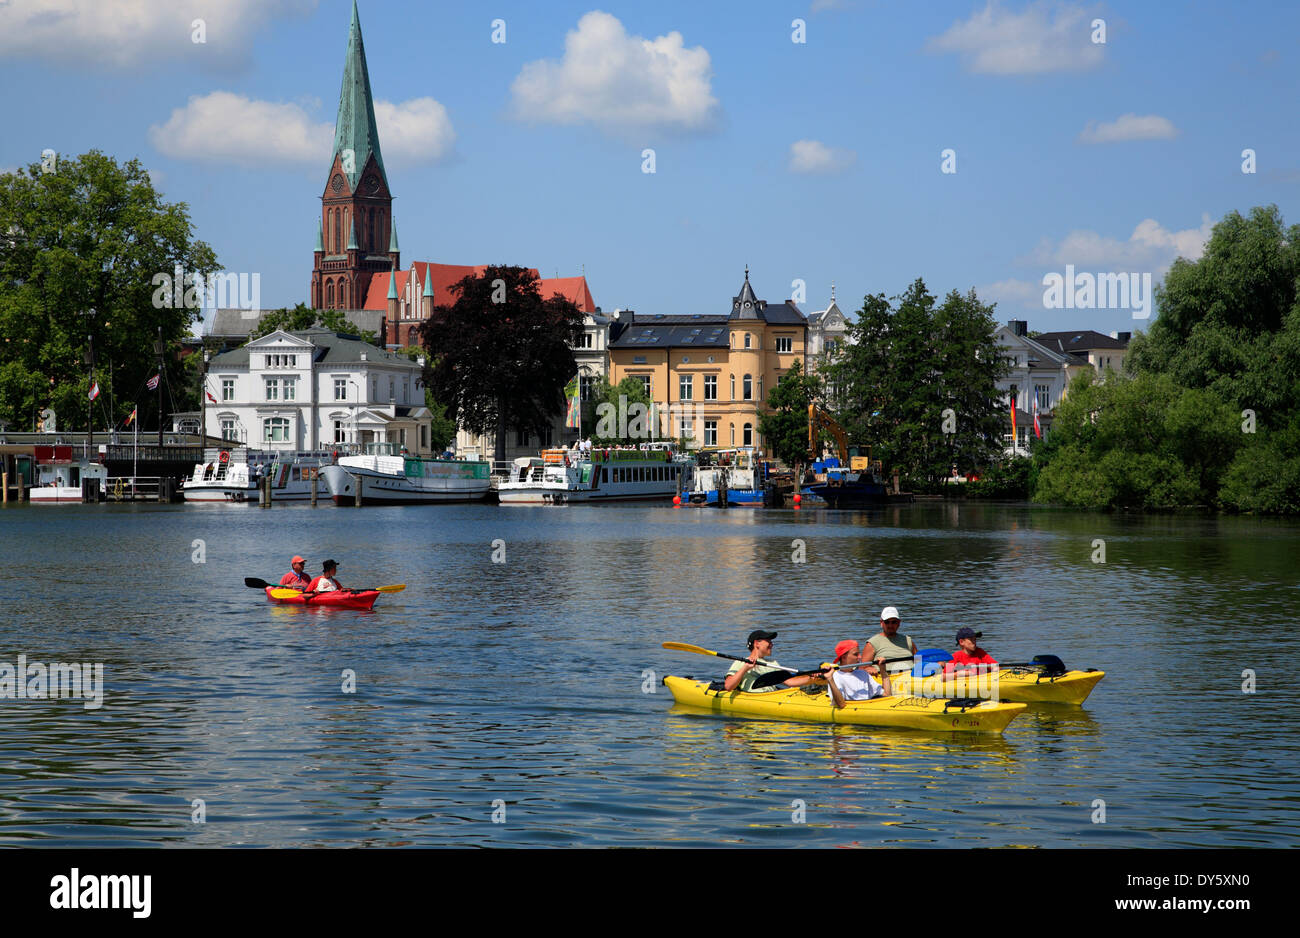 Schwerin, am Schweriner See paddeln sehen, Mecklenburg Western Pomerania,  Deutschland, Europa Stockfotografie - Alamy